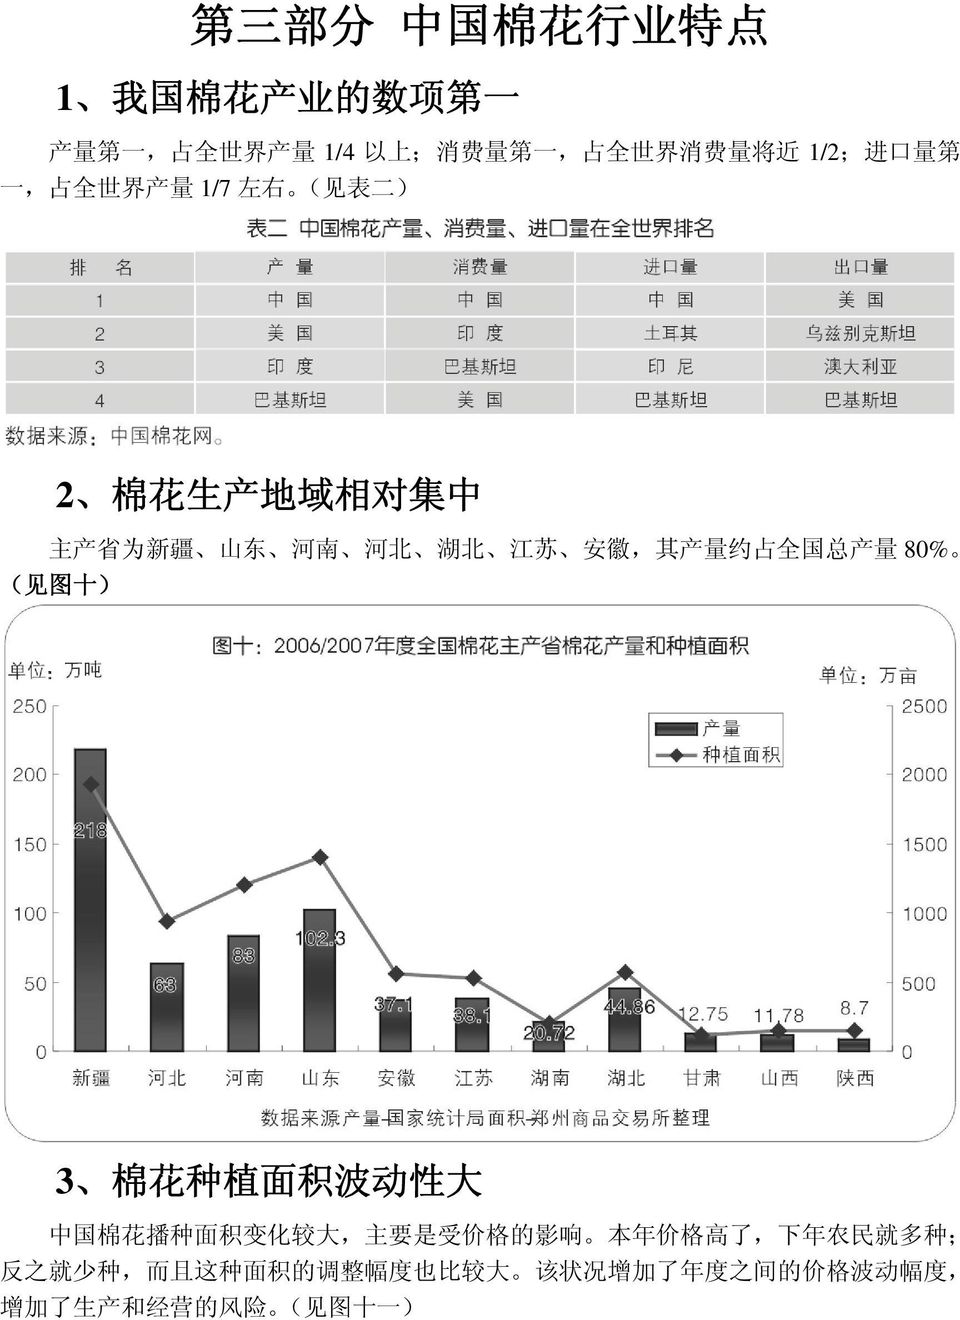 国 总 产 量 80% ( 见 图 十 ) 3 棉 花 种 植 面 积 波 动 性 大 中 国 棉 花 播 种 面 积 变 化 较 大, 主 要 是 受 价 格 的 影 响 本 年 价 格 高 了, 下 年 农 民 就 多